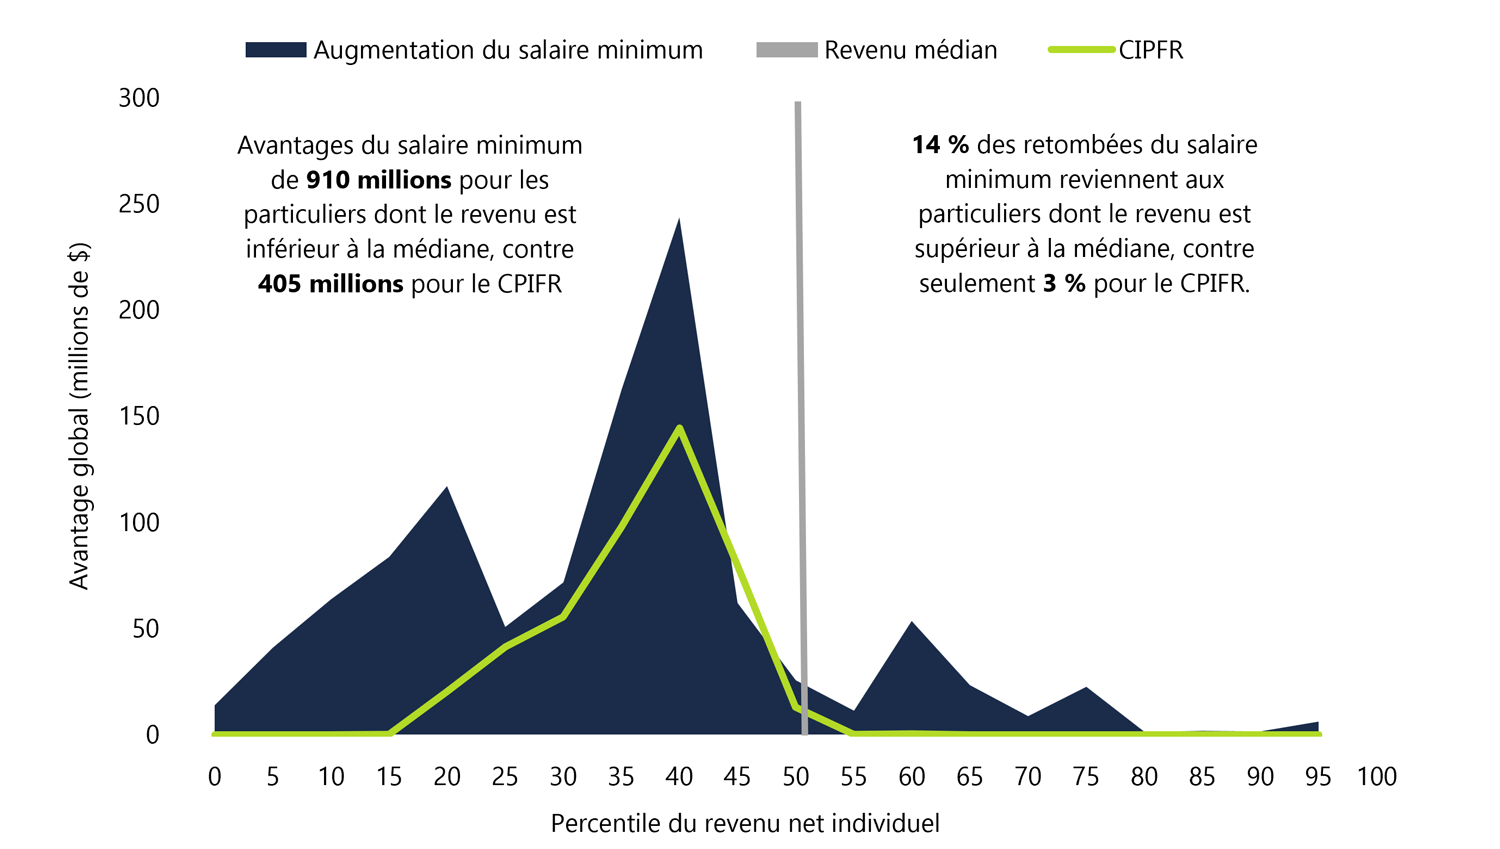 Répartition des avantages globaux d’une augmentation du salaire minimum et de l’instauration du CIPFR selon le percentile du revenu individuel net